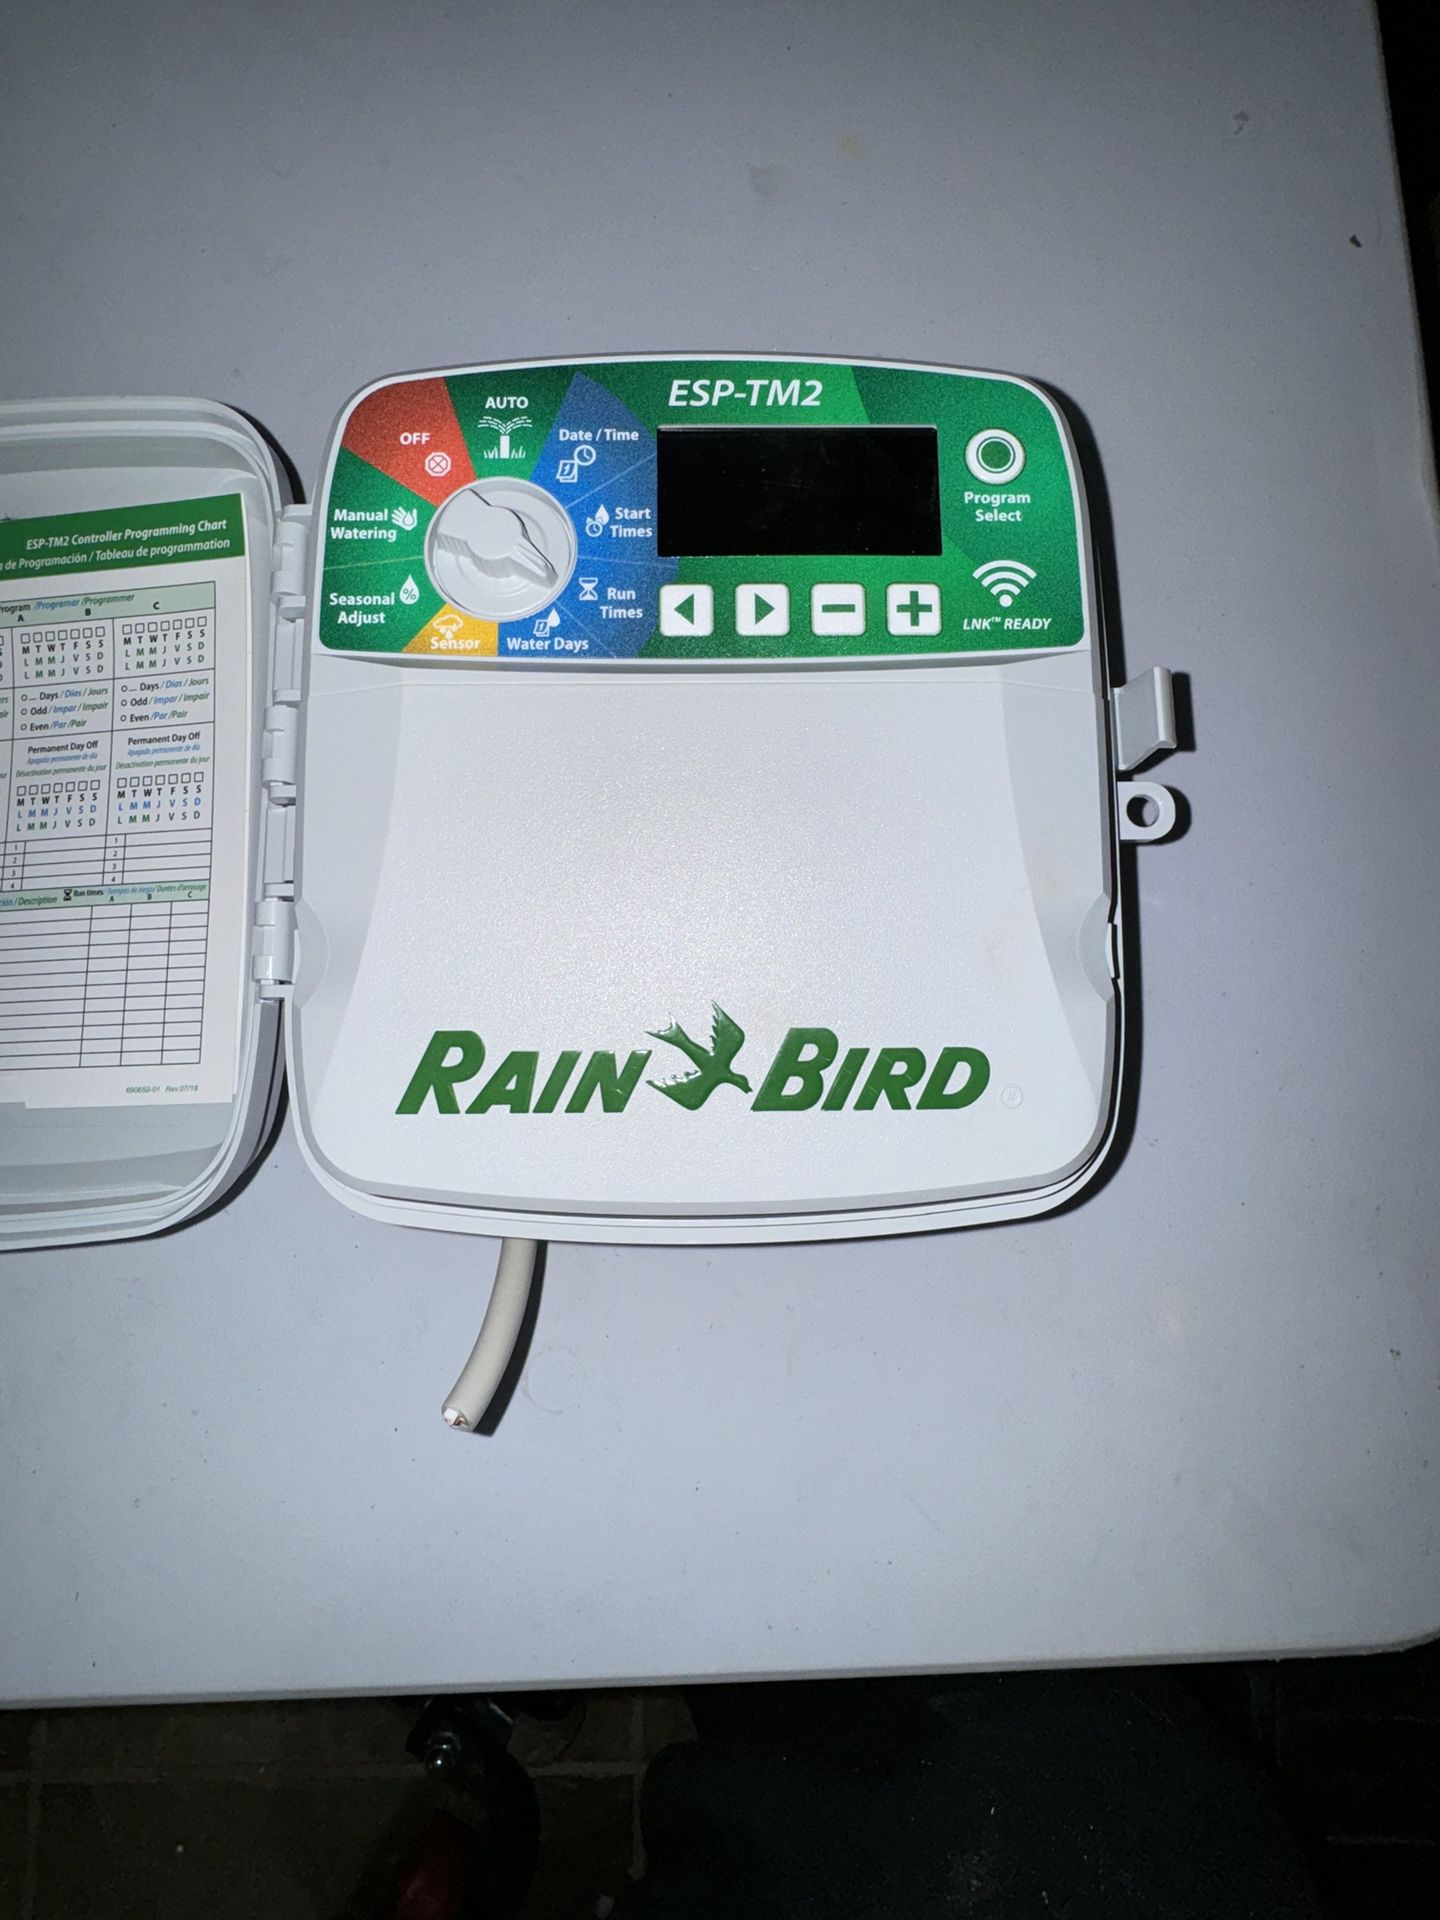 Rainbird Sprinkler Control